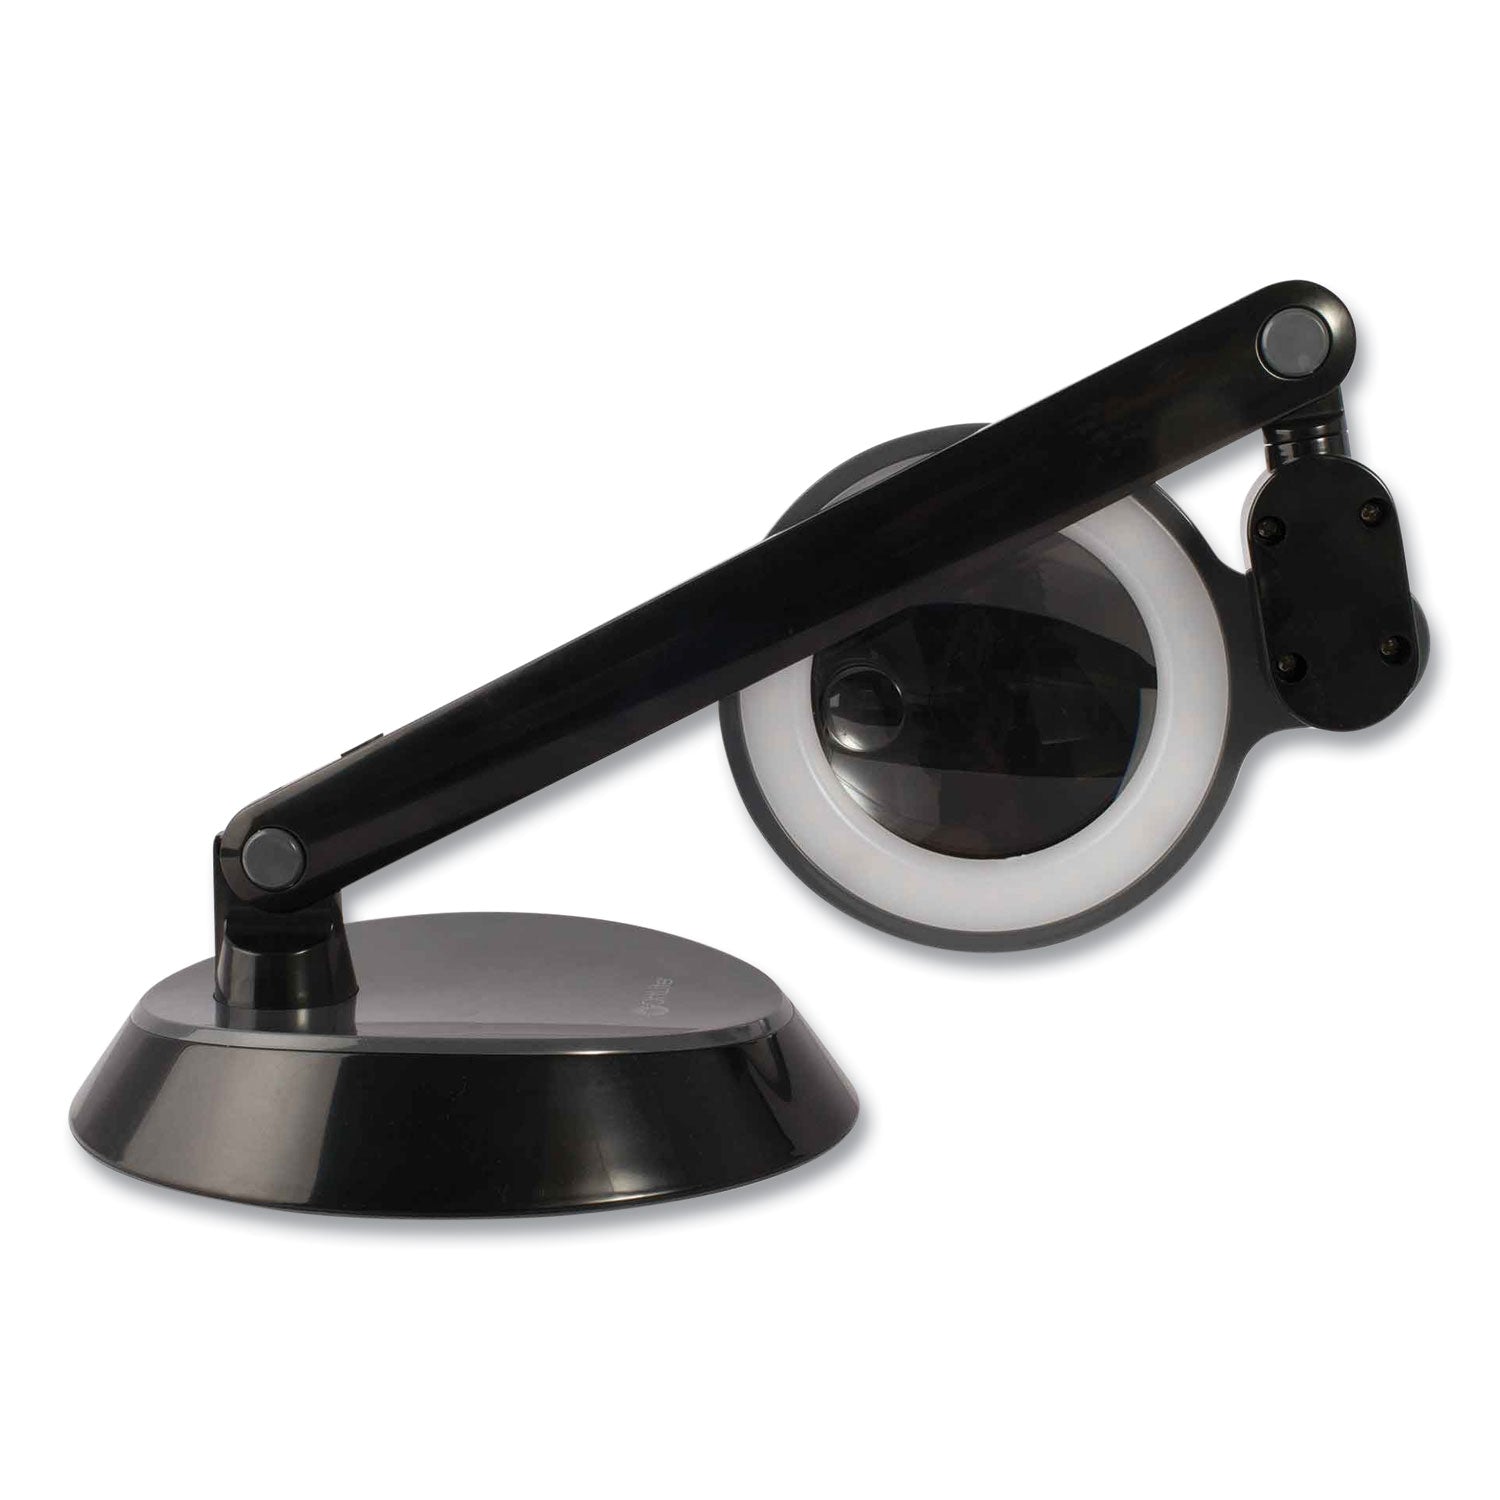 space-saving-led-magnifier-desk-lamp-14-high-black-ships-in-4-6-business-days_ottg97bgcffp - 2